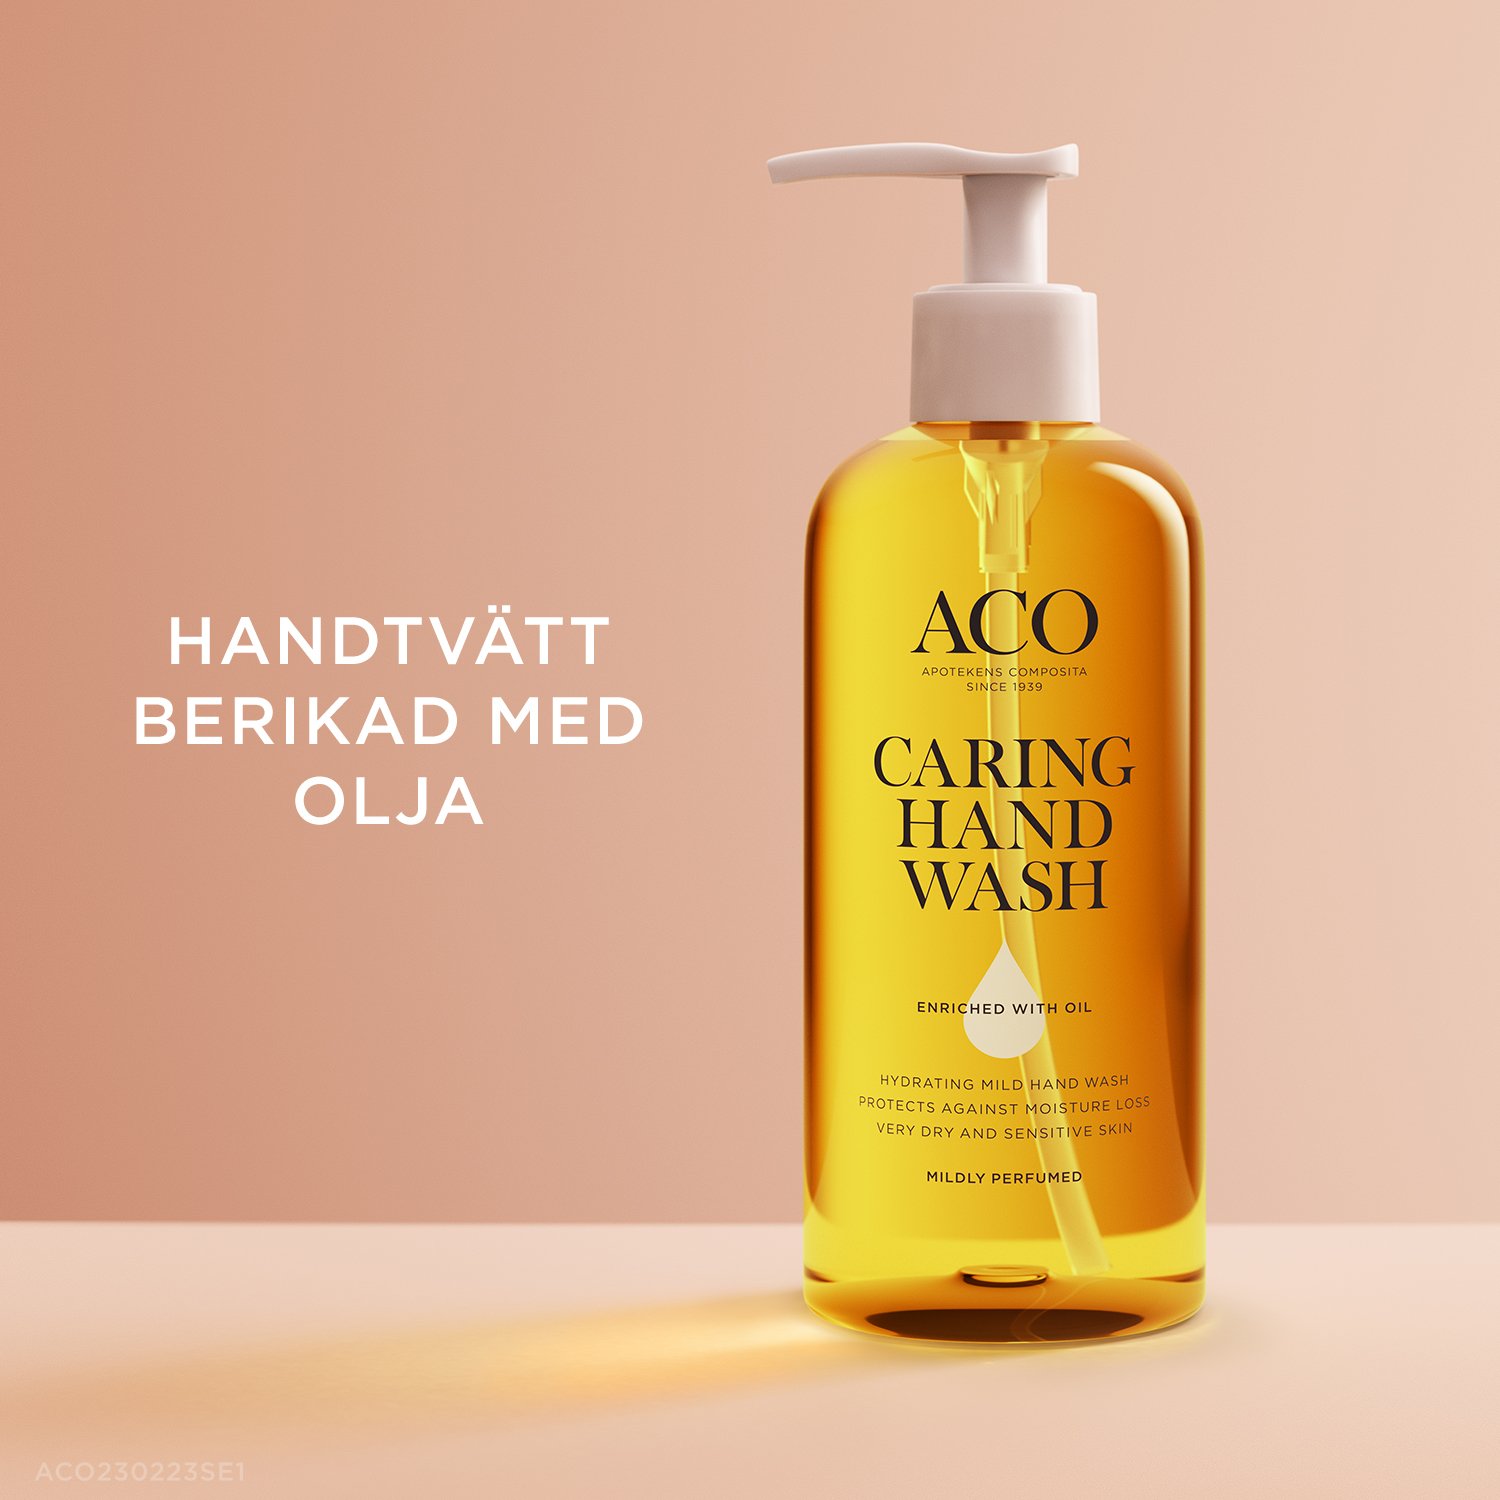 ACO Body Caring Hand Wash Handtvätt berikad med olja 280 ml